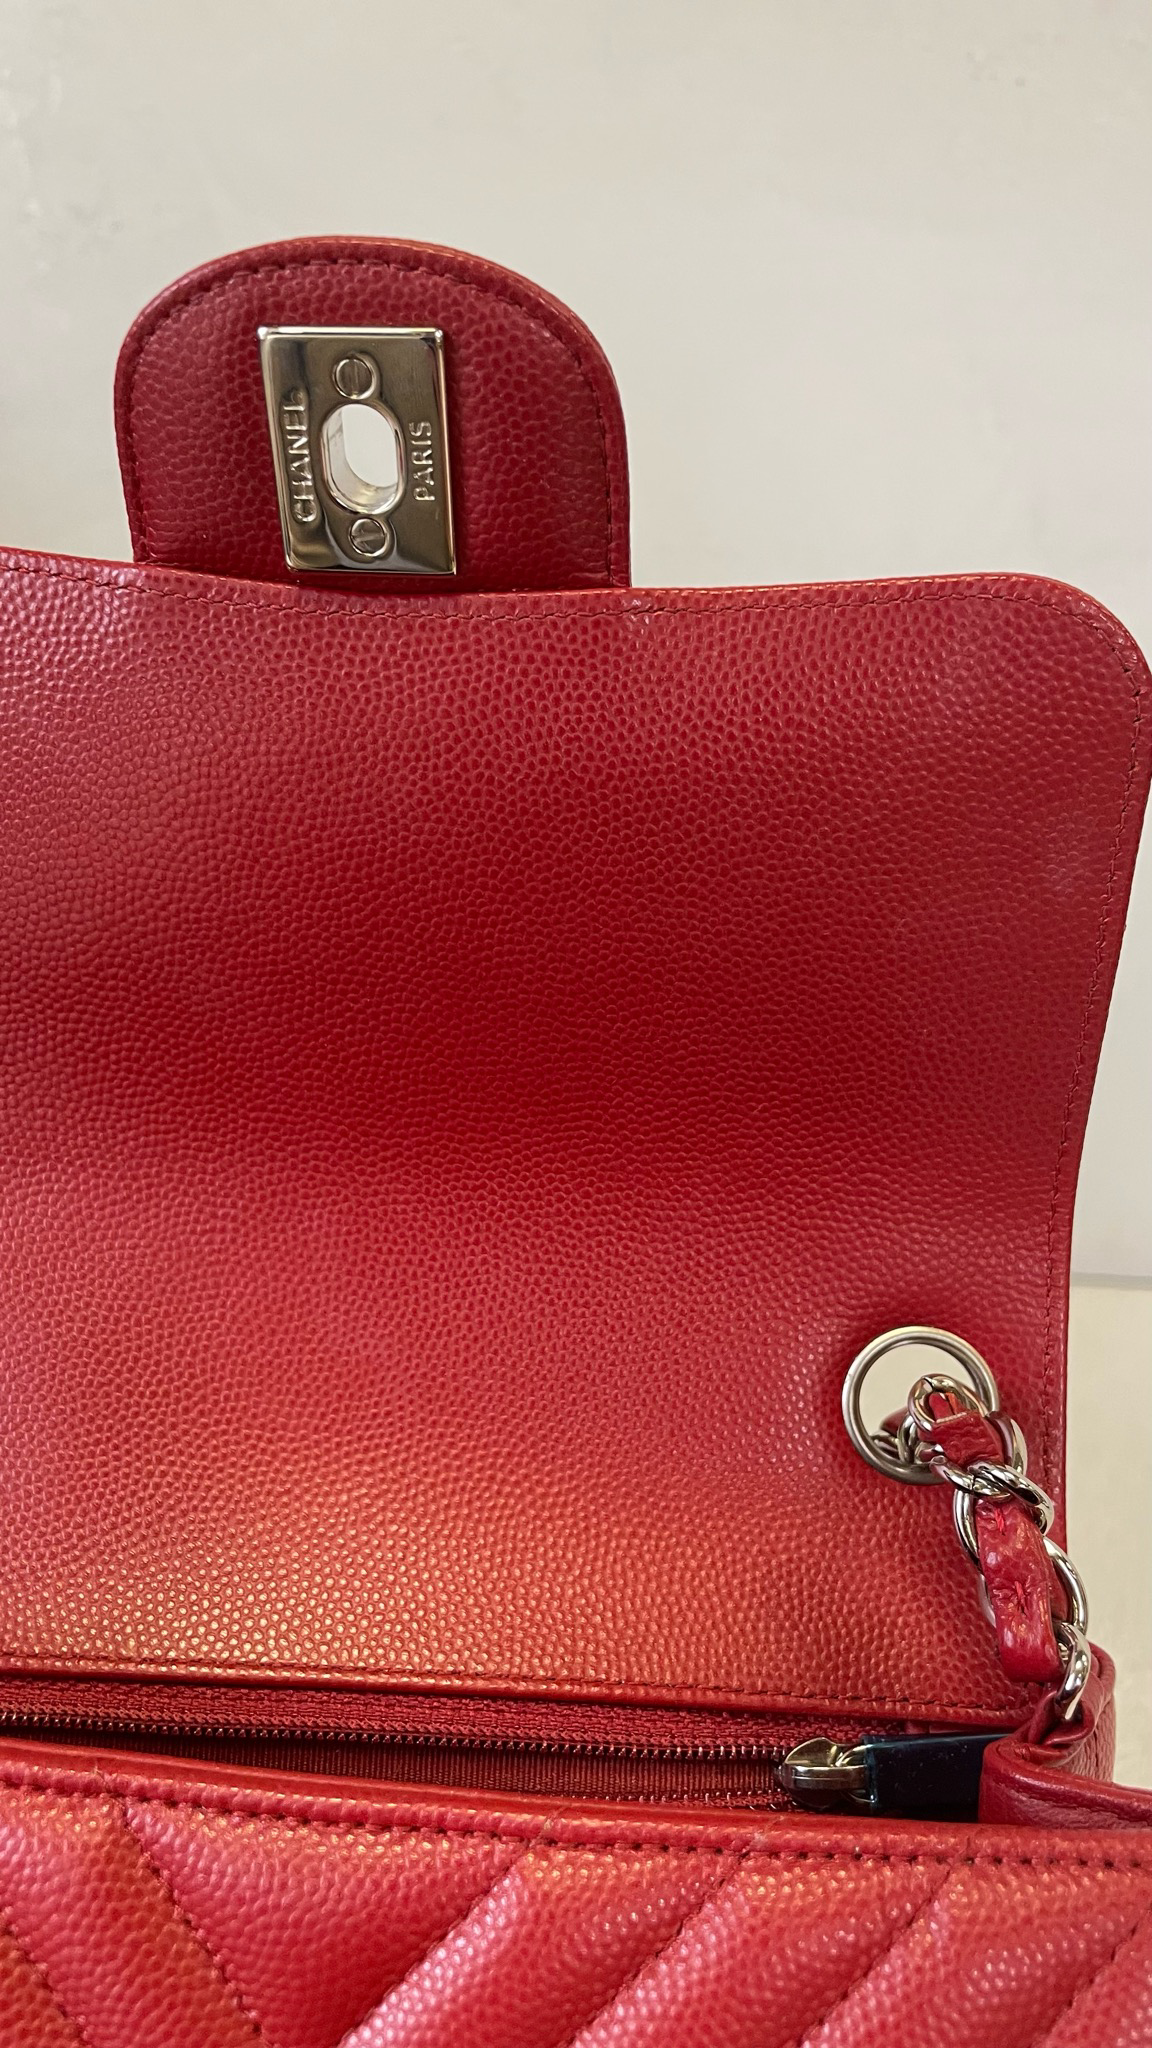 Chanel Classic Mini Square, 13B Red Lambskin with Silver Hardware, Preowned  in Box WA001 - Julia Rose Boston